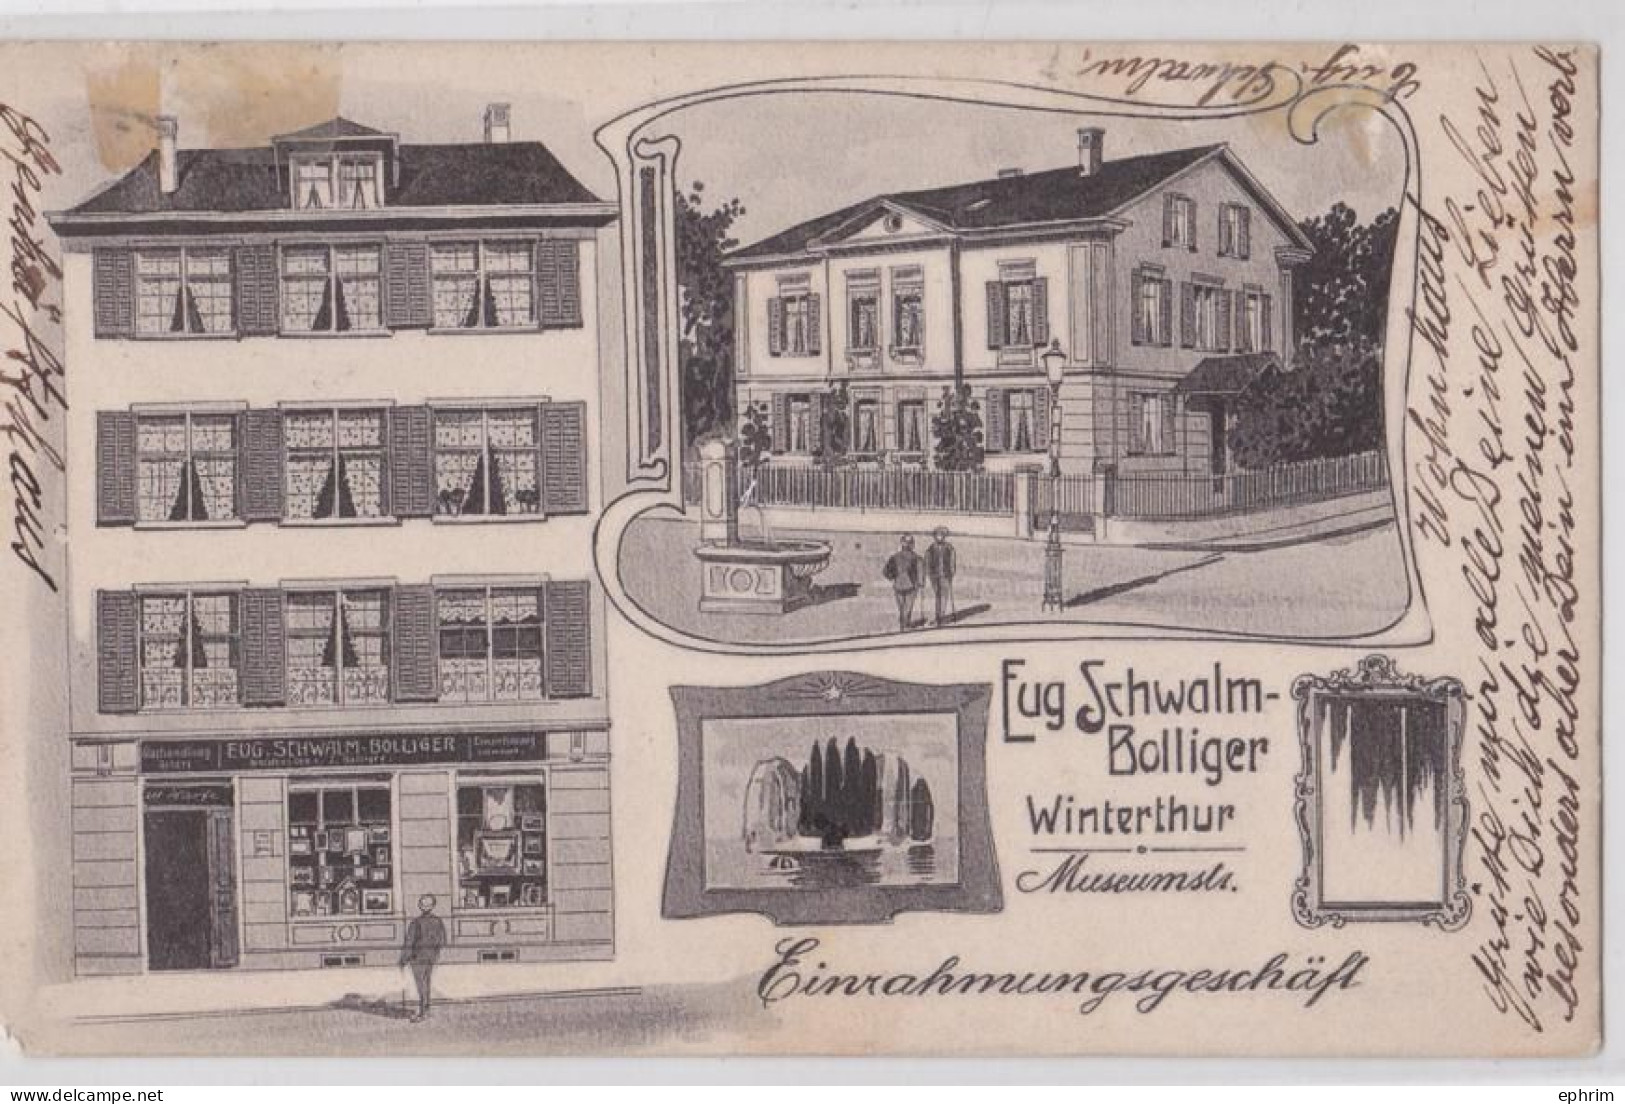 Winterthur Eug. Schwalm-Bolliger Glashandlung Museumstrasse Einrahmungsgeschäft - Winterthur